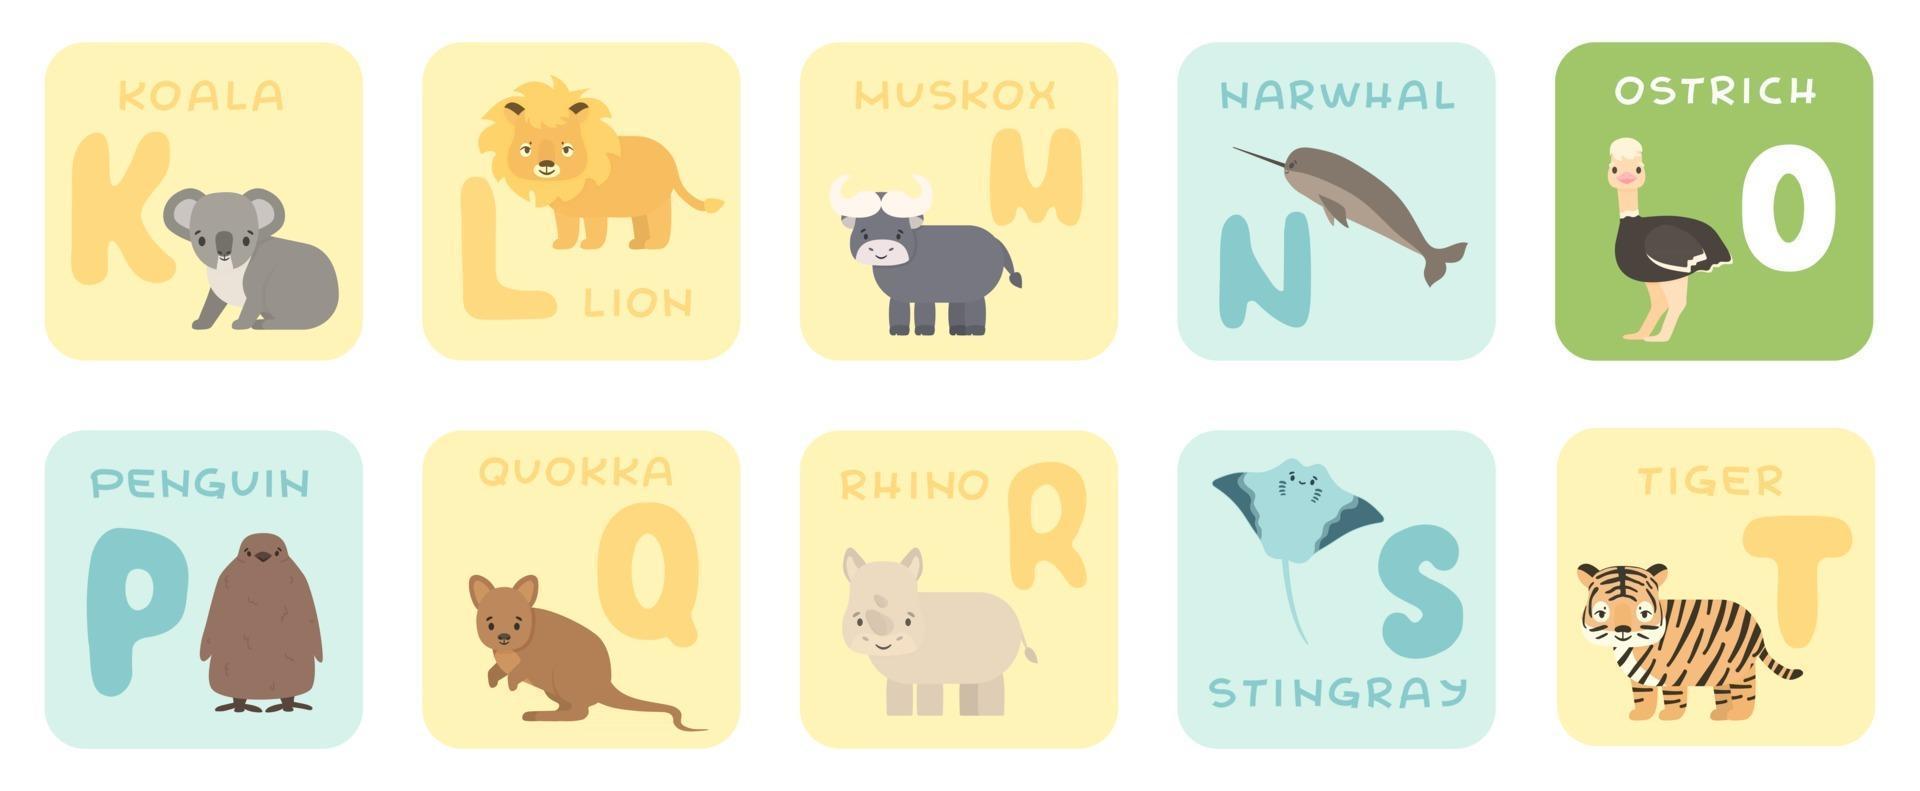 Cartões de alfabeto kt fofos com desenhos animados de animais africanos de savana com ilustrações de zoológico vetor